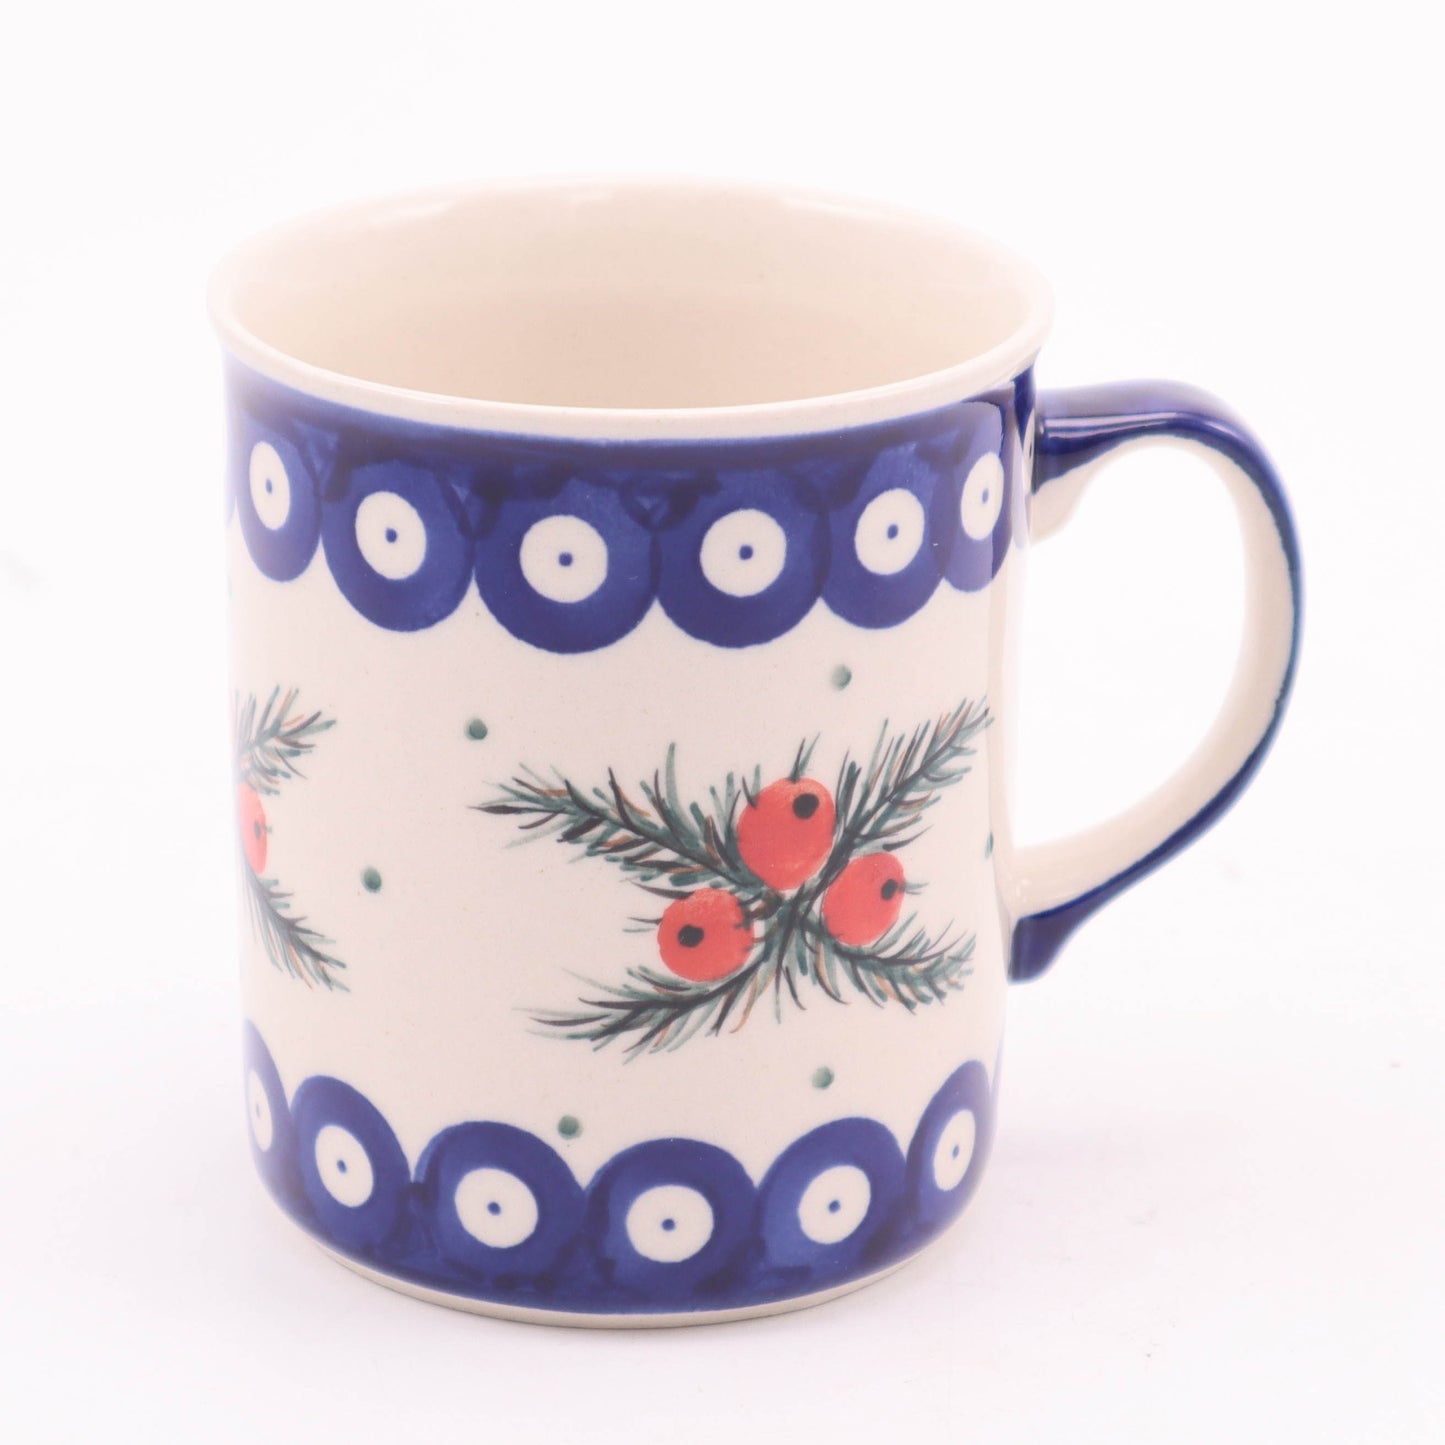 10oz Straight Mug. Pattern: Mistletoe